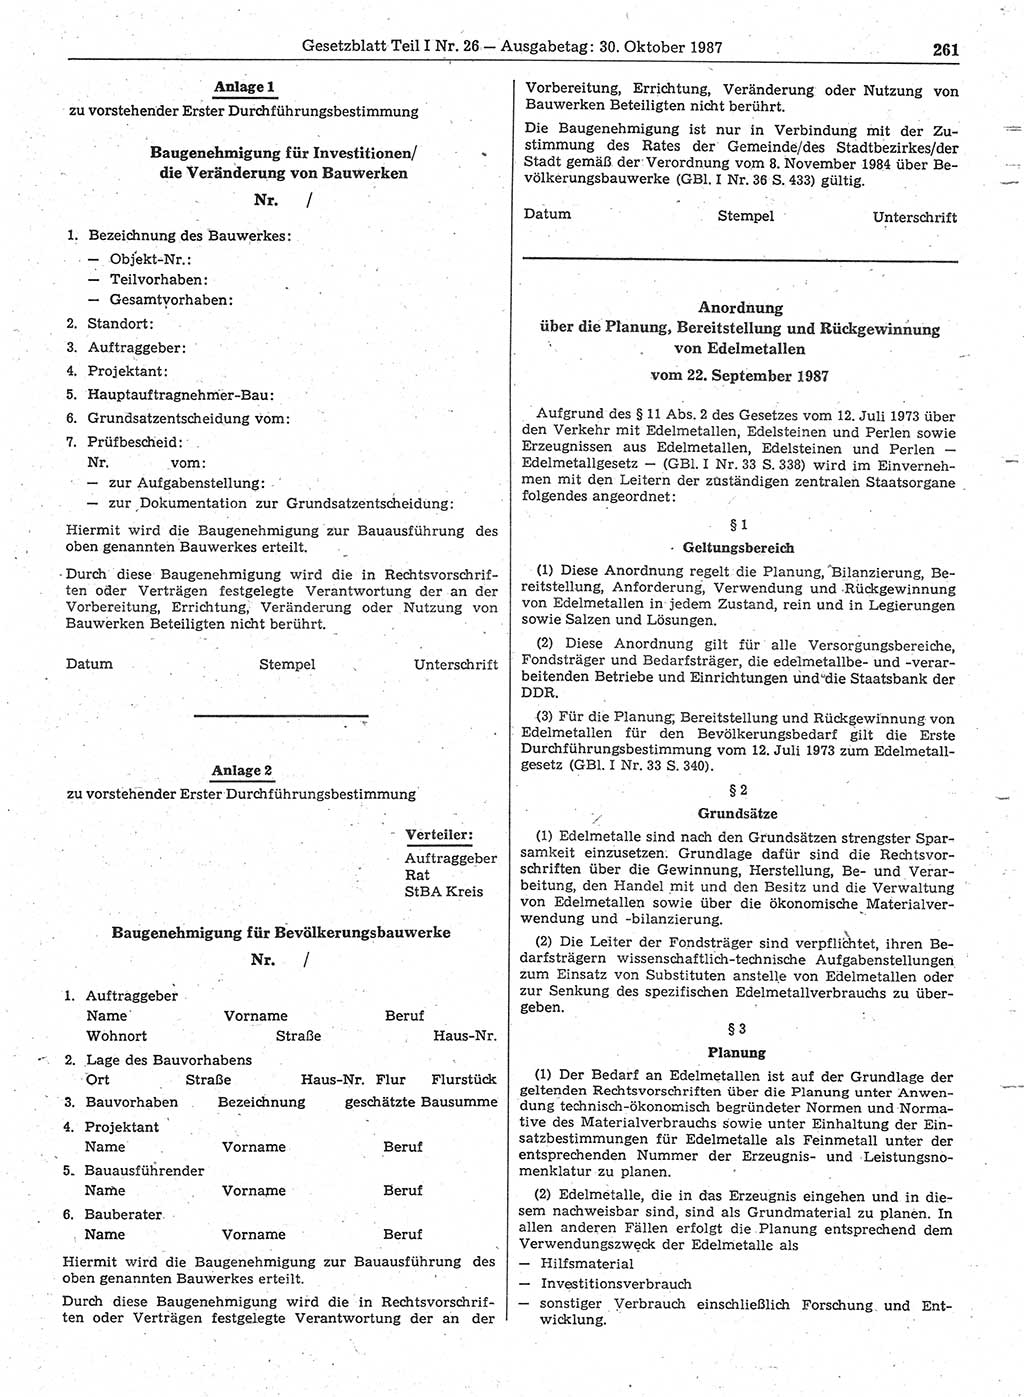 Gesetzblatt (GBl.) der Deutschen Demokratischen Republik (DDR) Teil Ⅰ 1987, Seite 261 (GBl. DDR Ⅰ 1987, S. 261)